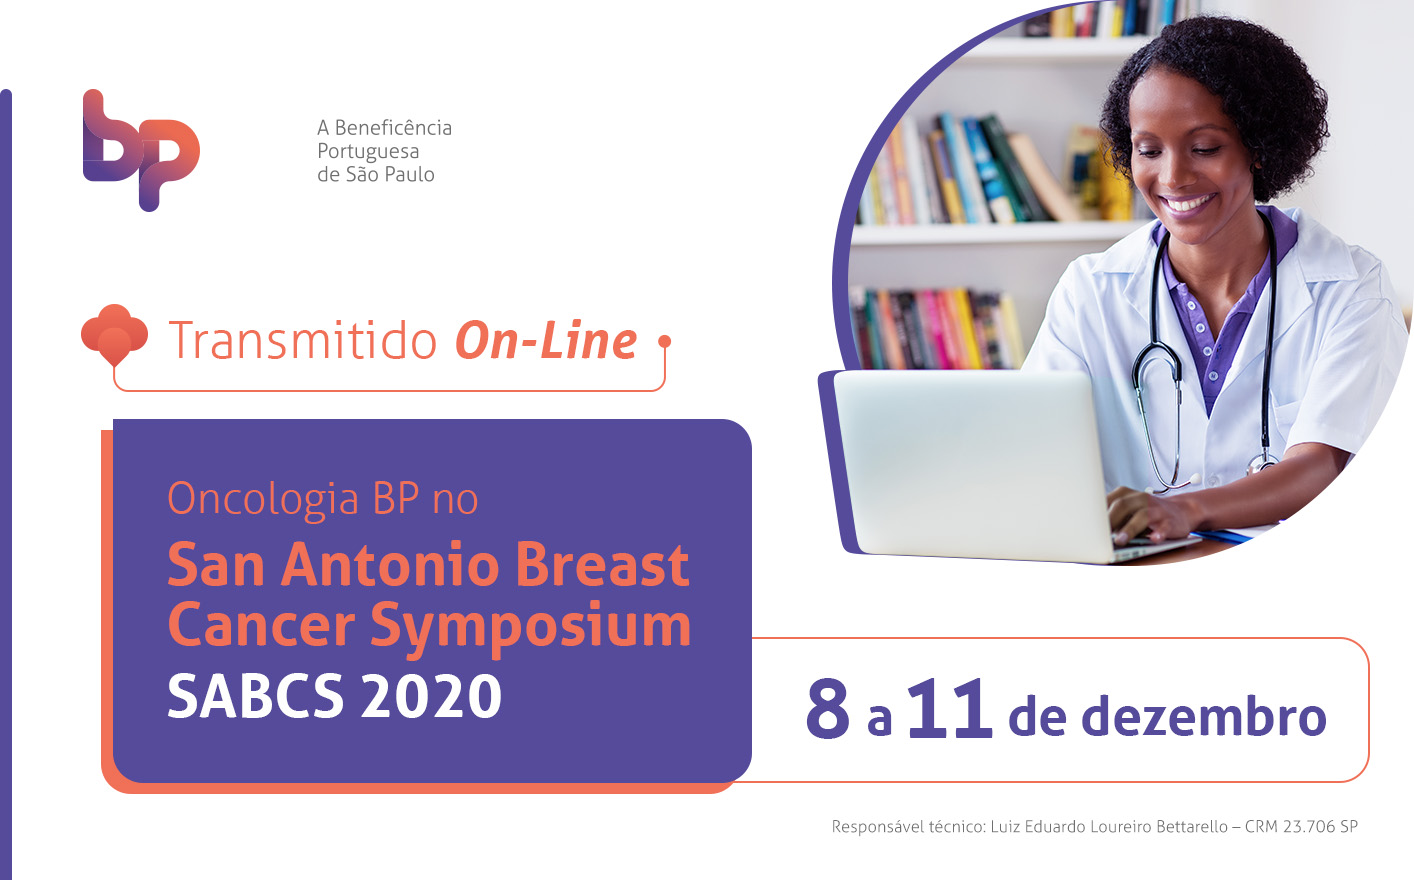 Oncologia BP no San Antonio Breast Cancer Symposium - SABCS 2020